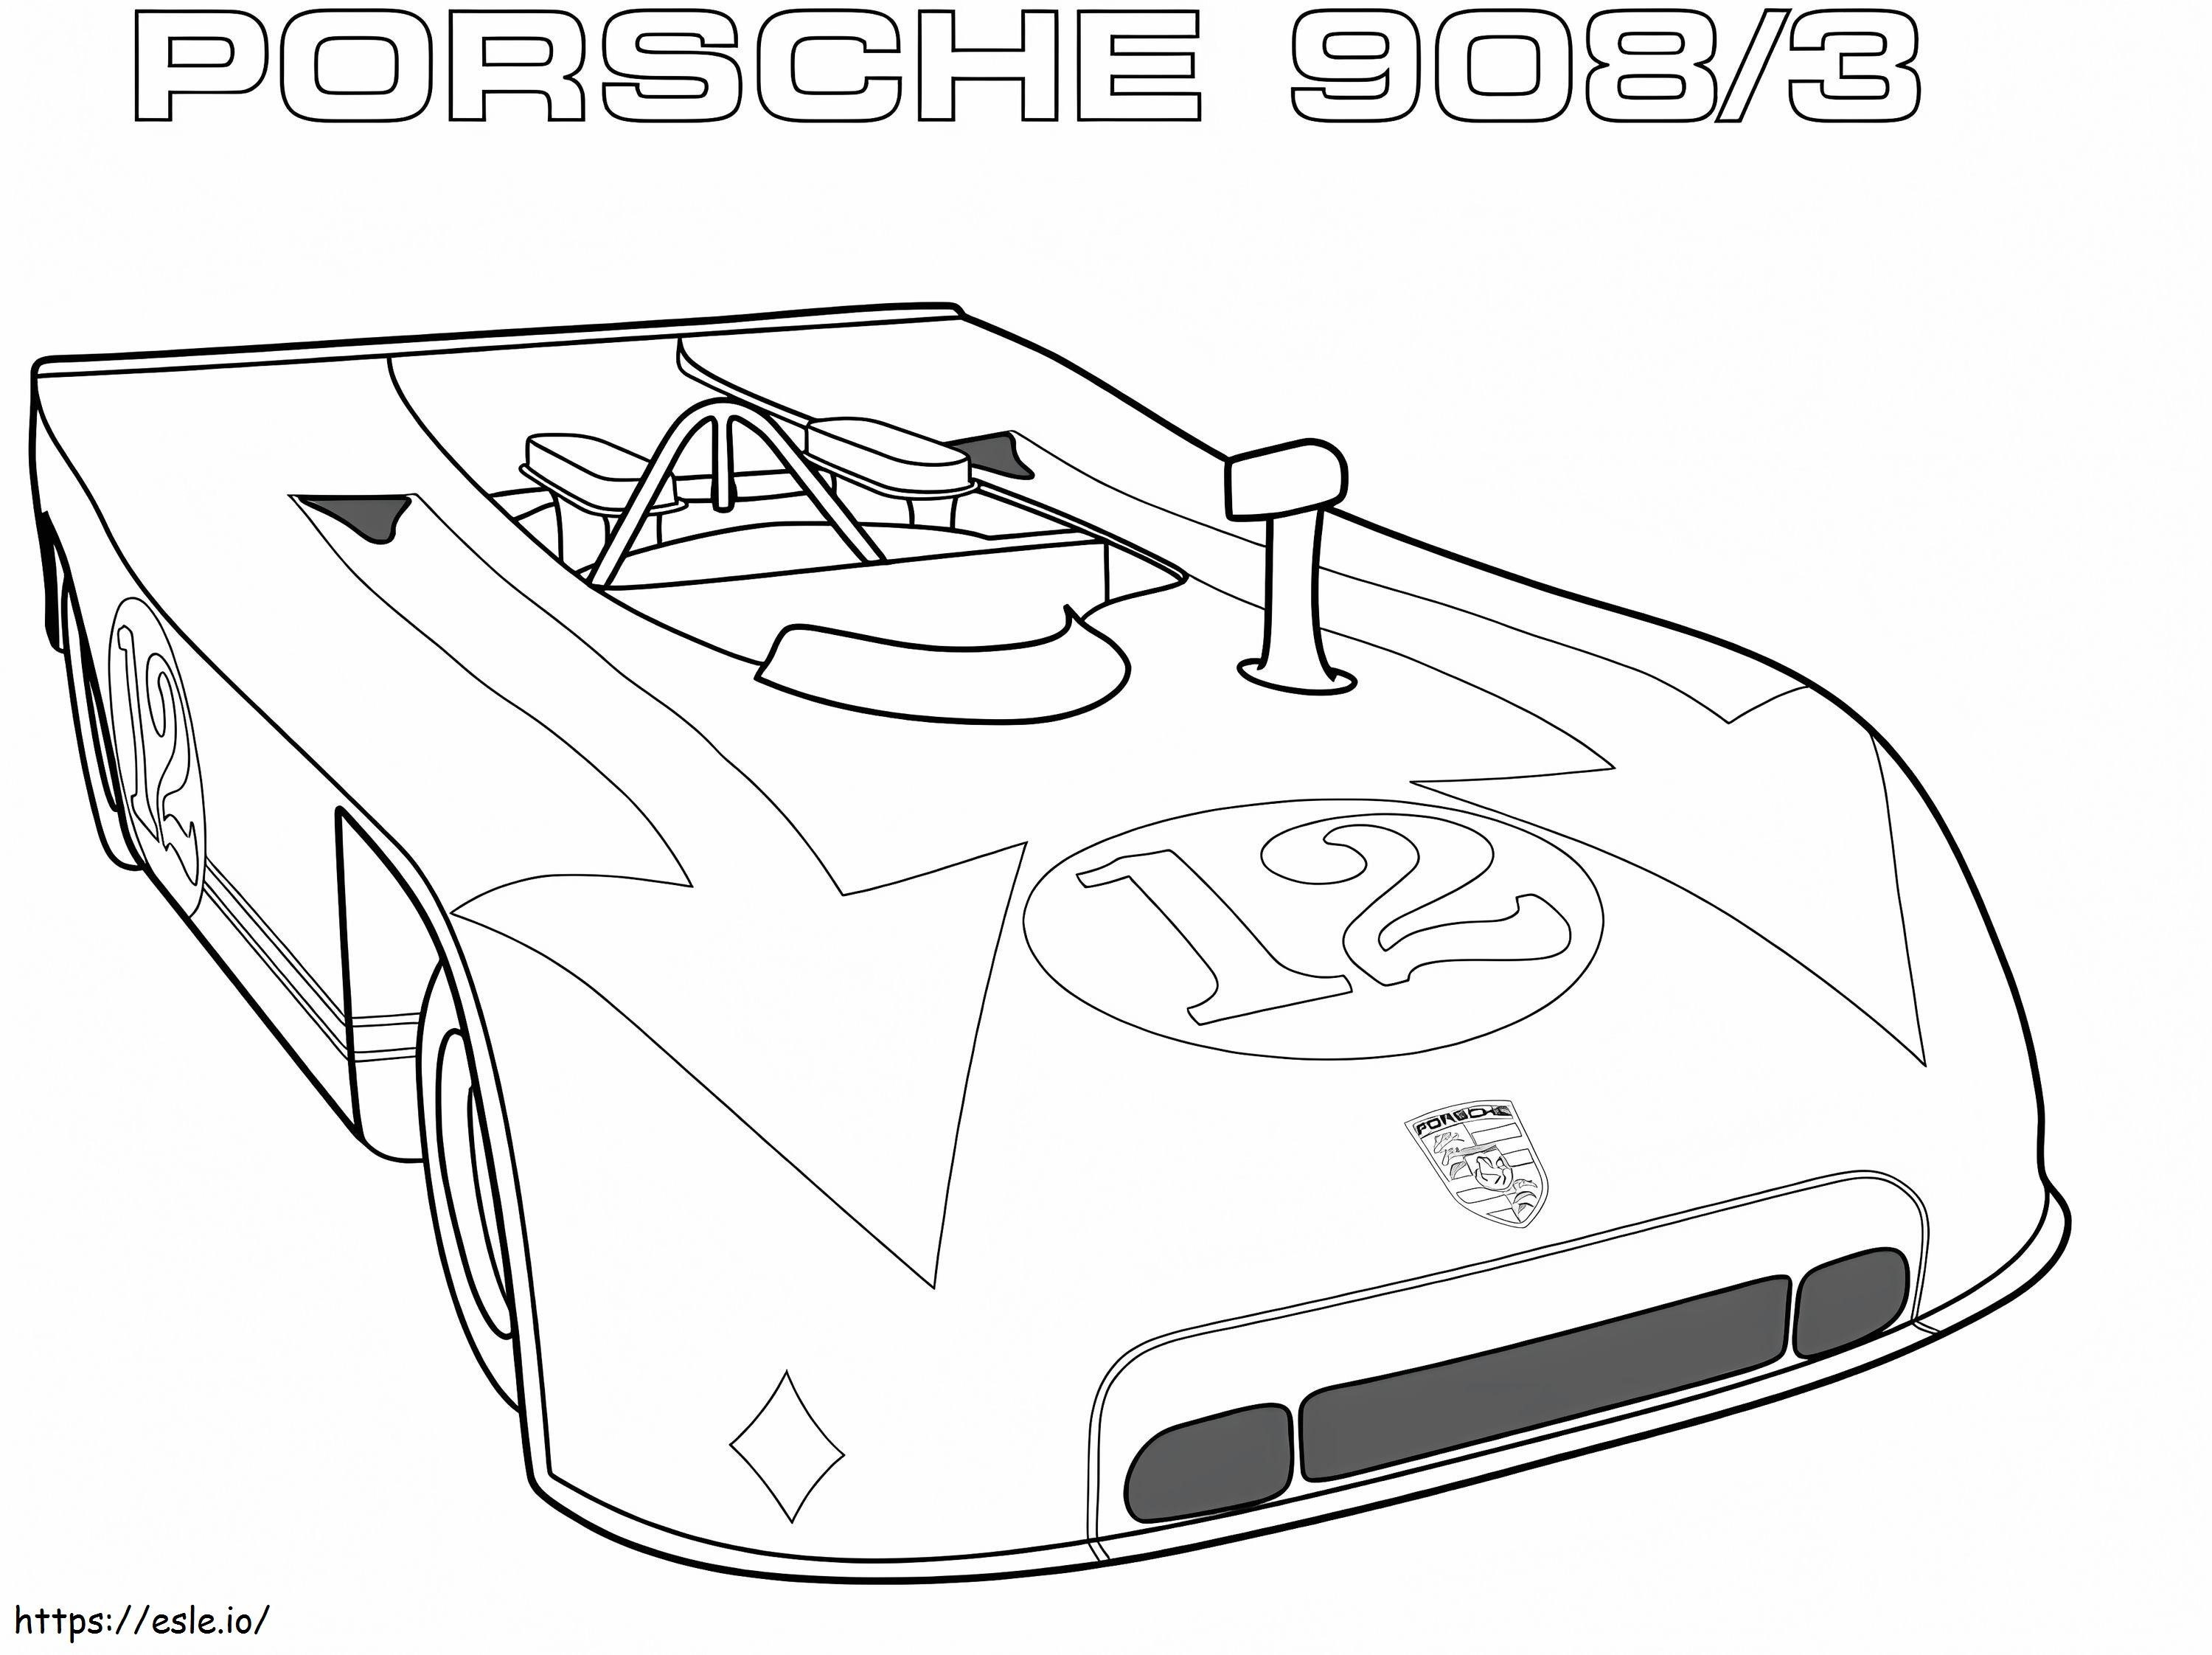  Porsche 9083 para colorear